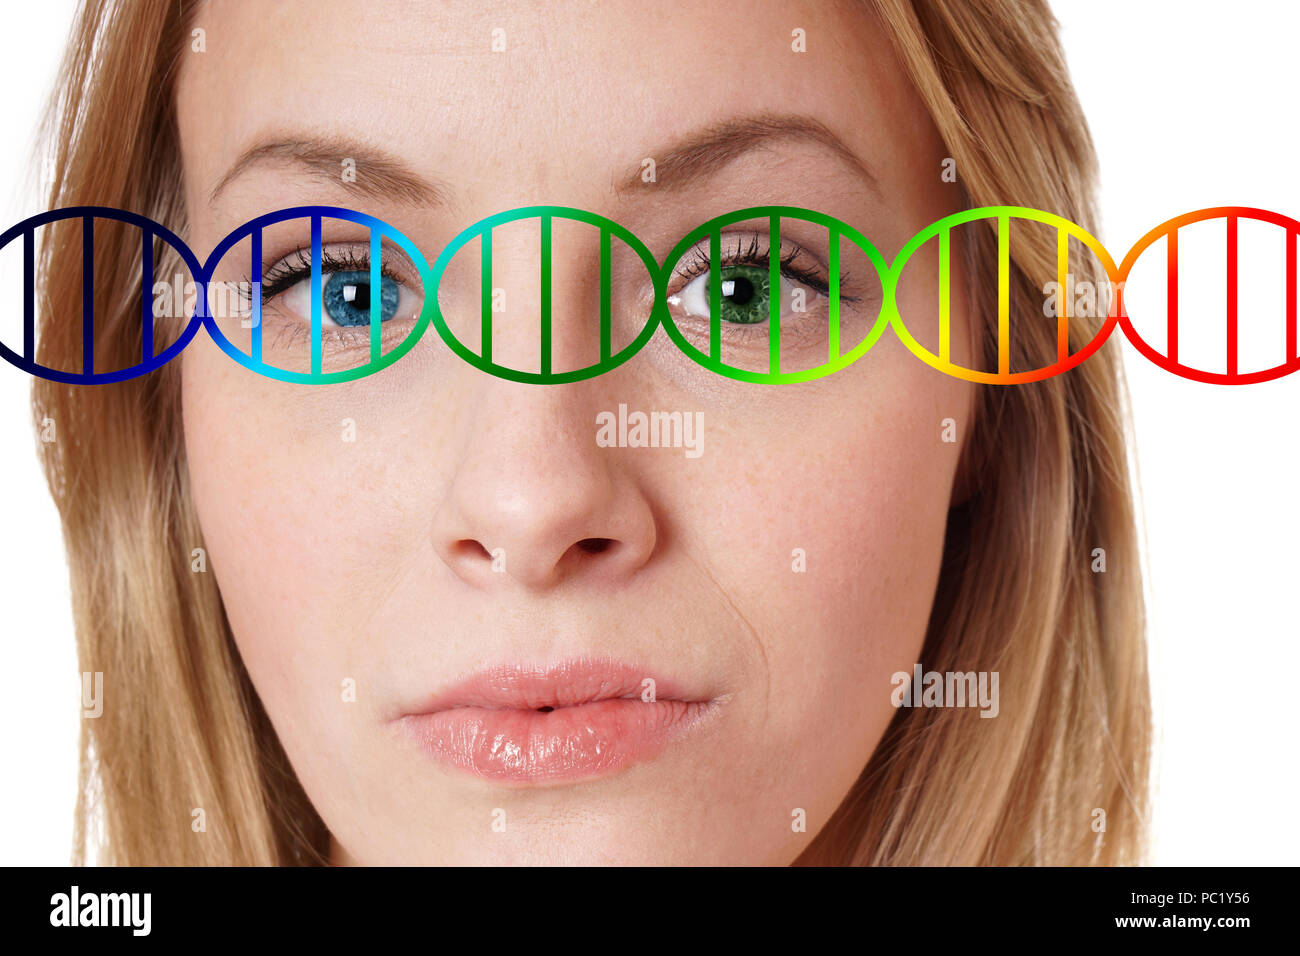 Genoma umano il concetto di editing, close-up ritratto di una giovane donna con uno blu e uno verde colore degli occhi sovrapposte con la doppia elica del DNA Foto Stock